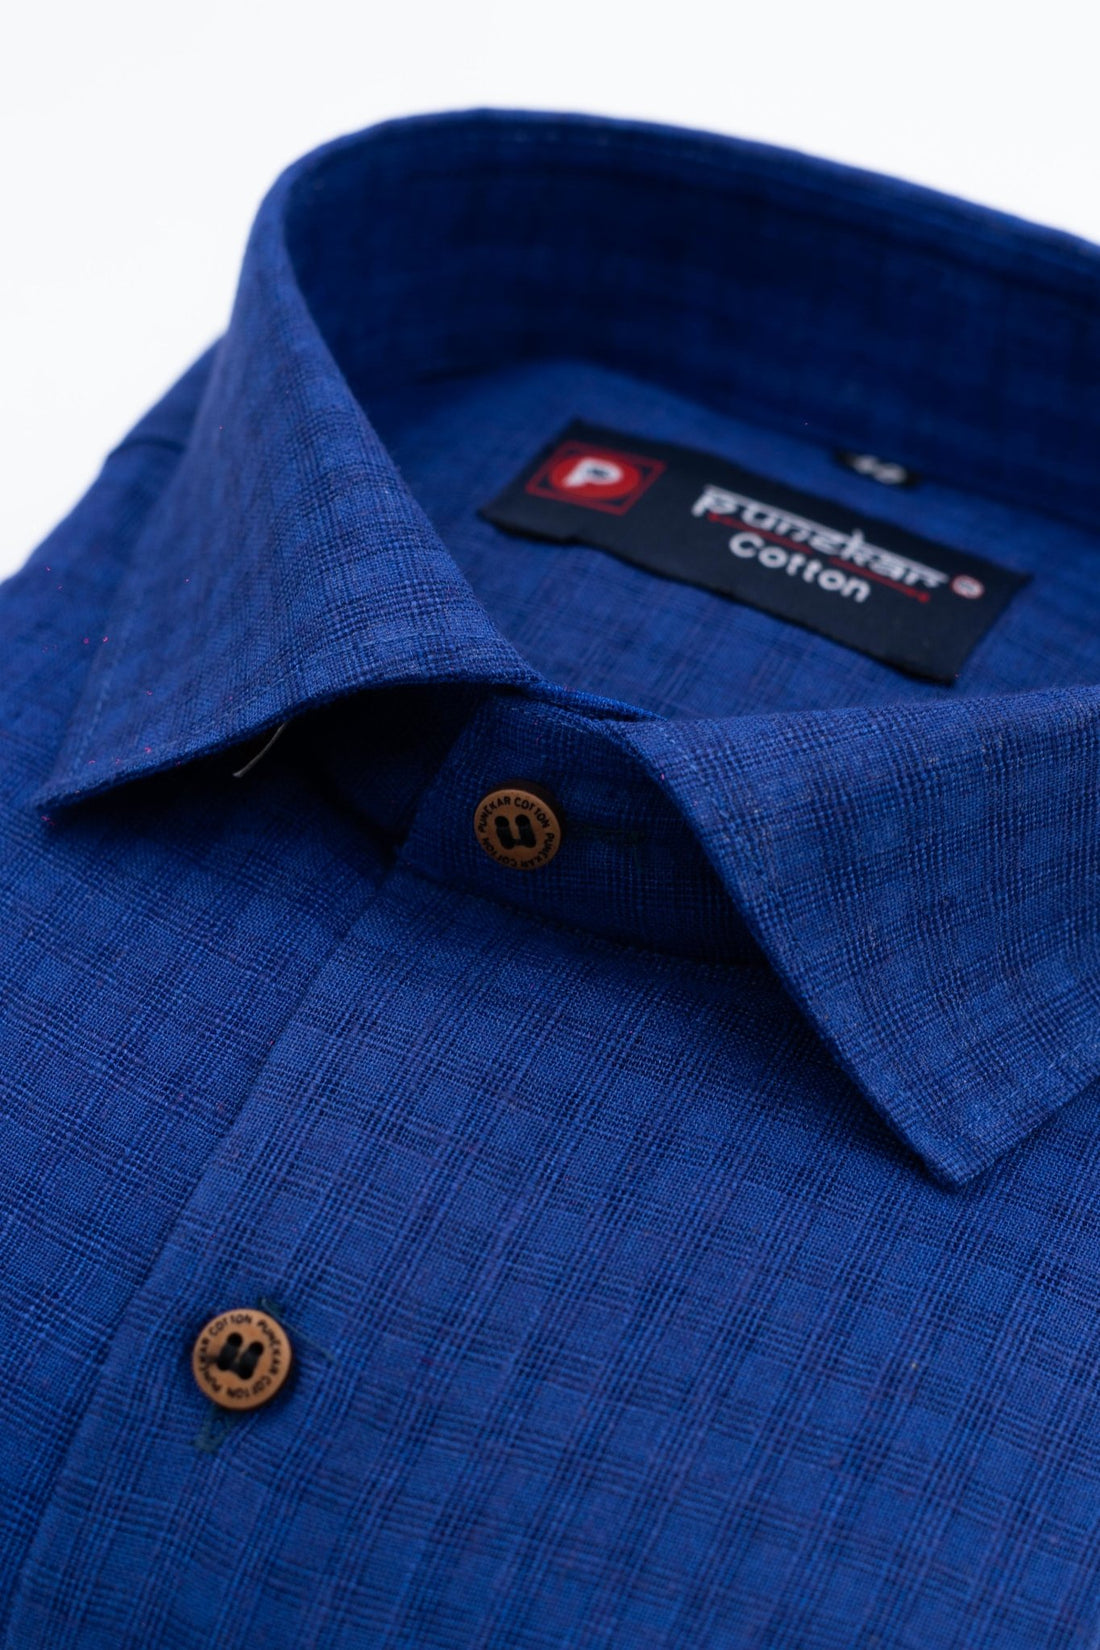 Navy Blue Color Cotton Self Woven Checks Handmade Shirts For Men&